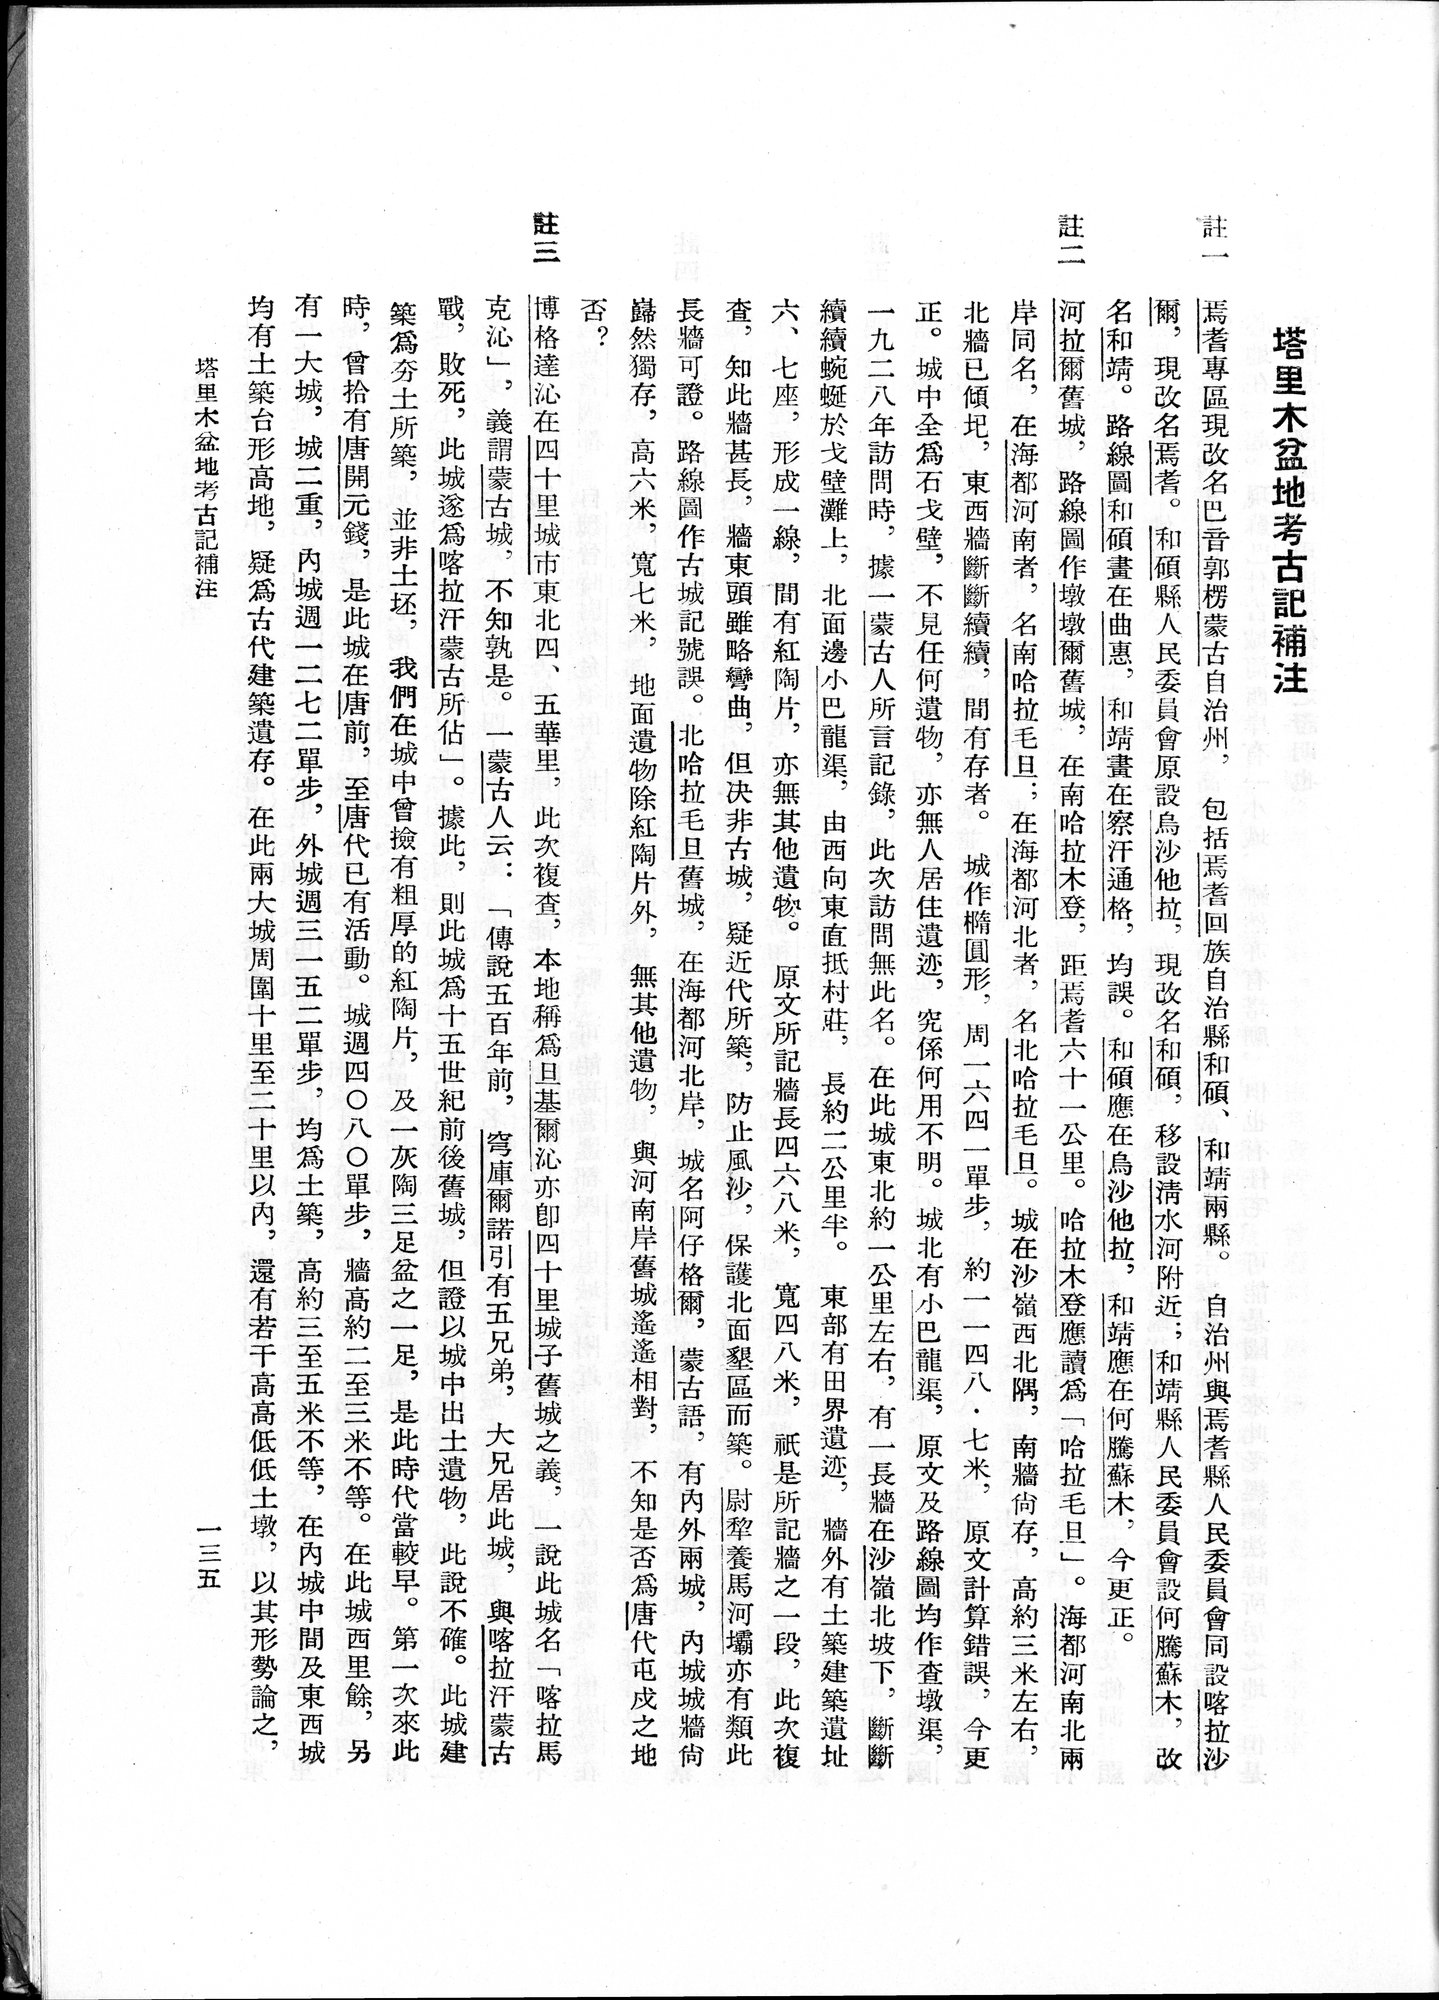 塔里木盆地考古記 : vol.1 / Page 199 (Grayscale High Resolution Image)